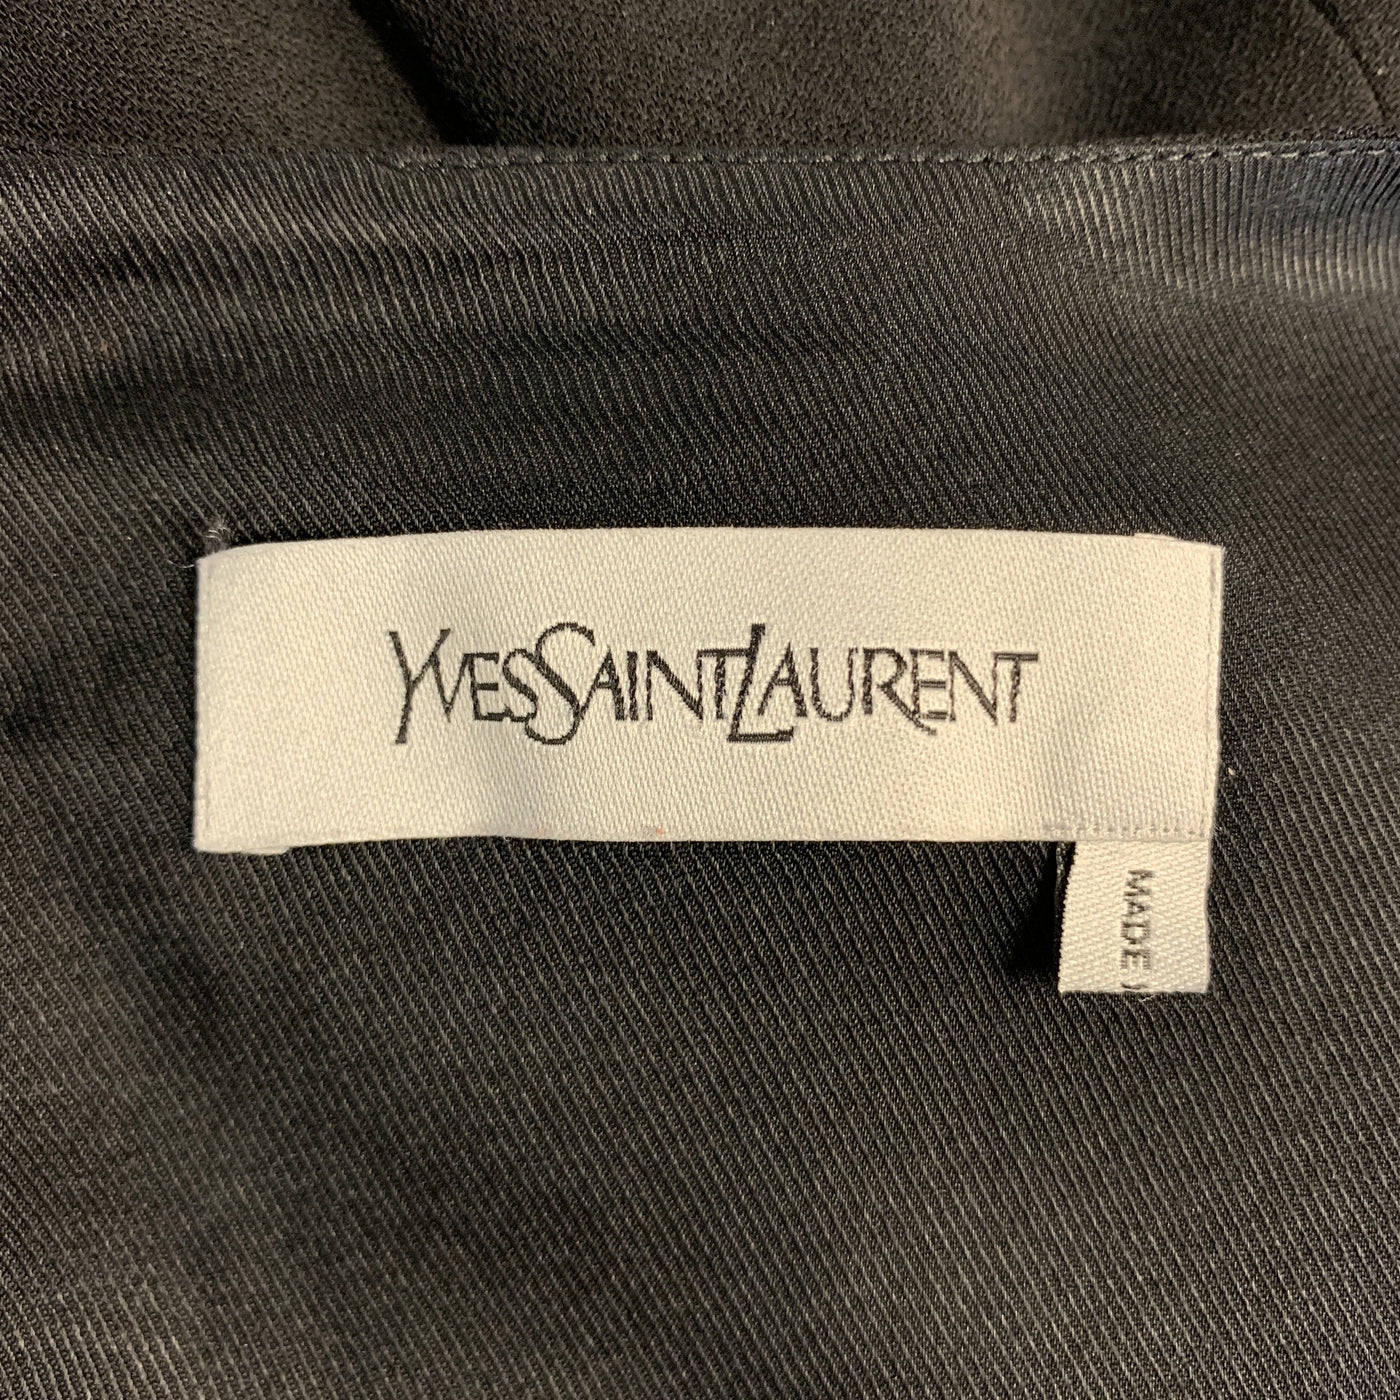 YVES SAINT LAURENT Size 6 Black Wool / Elastane Shift Dress